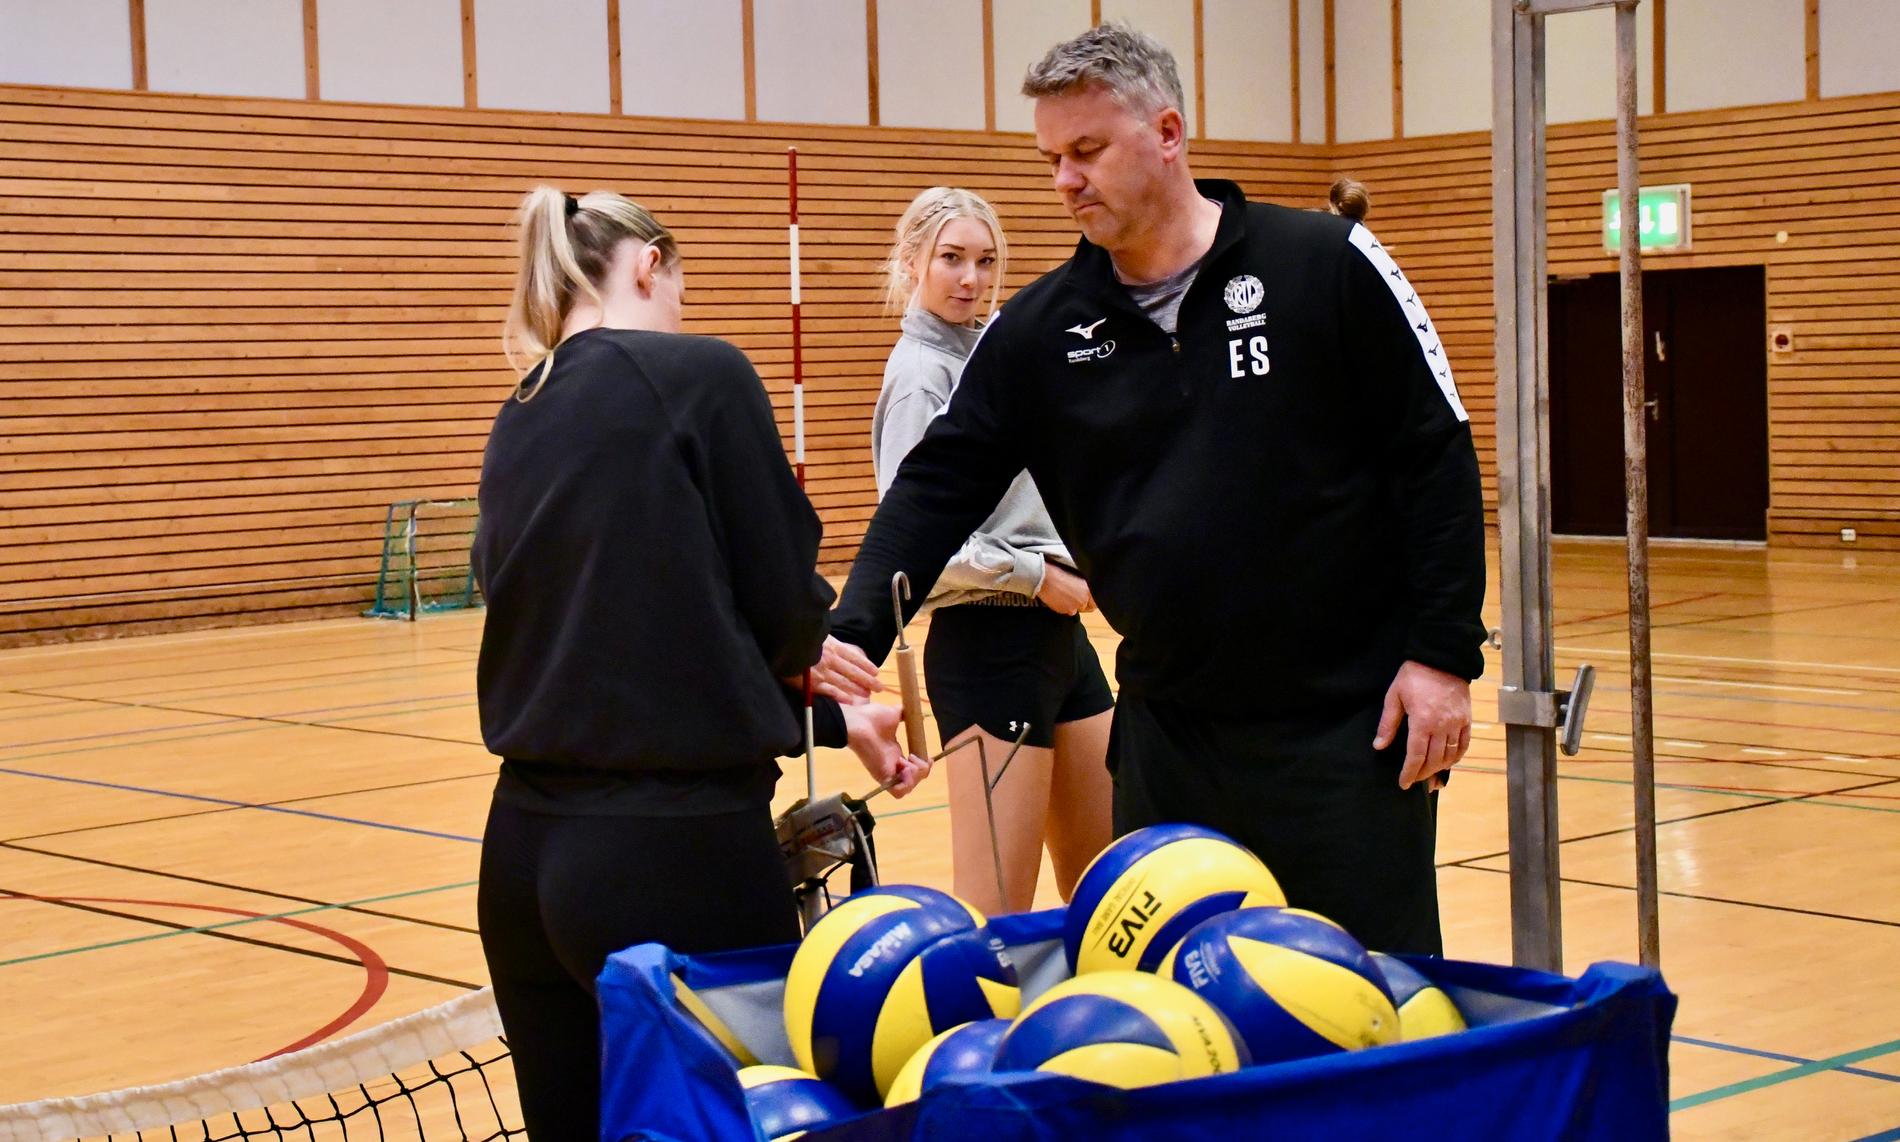 RIL-trener Espen Sørbø og damene gleder seg til sluttspillfinalene. De to første spilles i Randaberghallen mot BK Tromsø. |